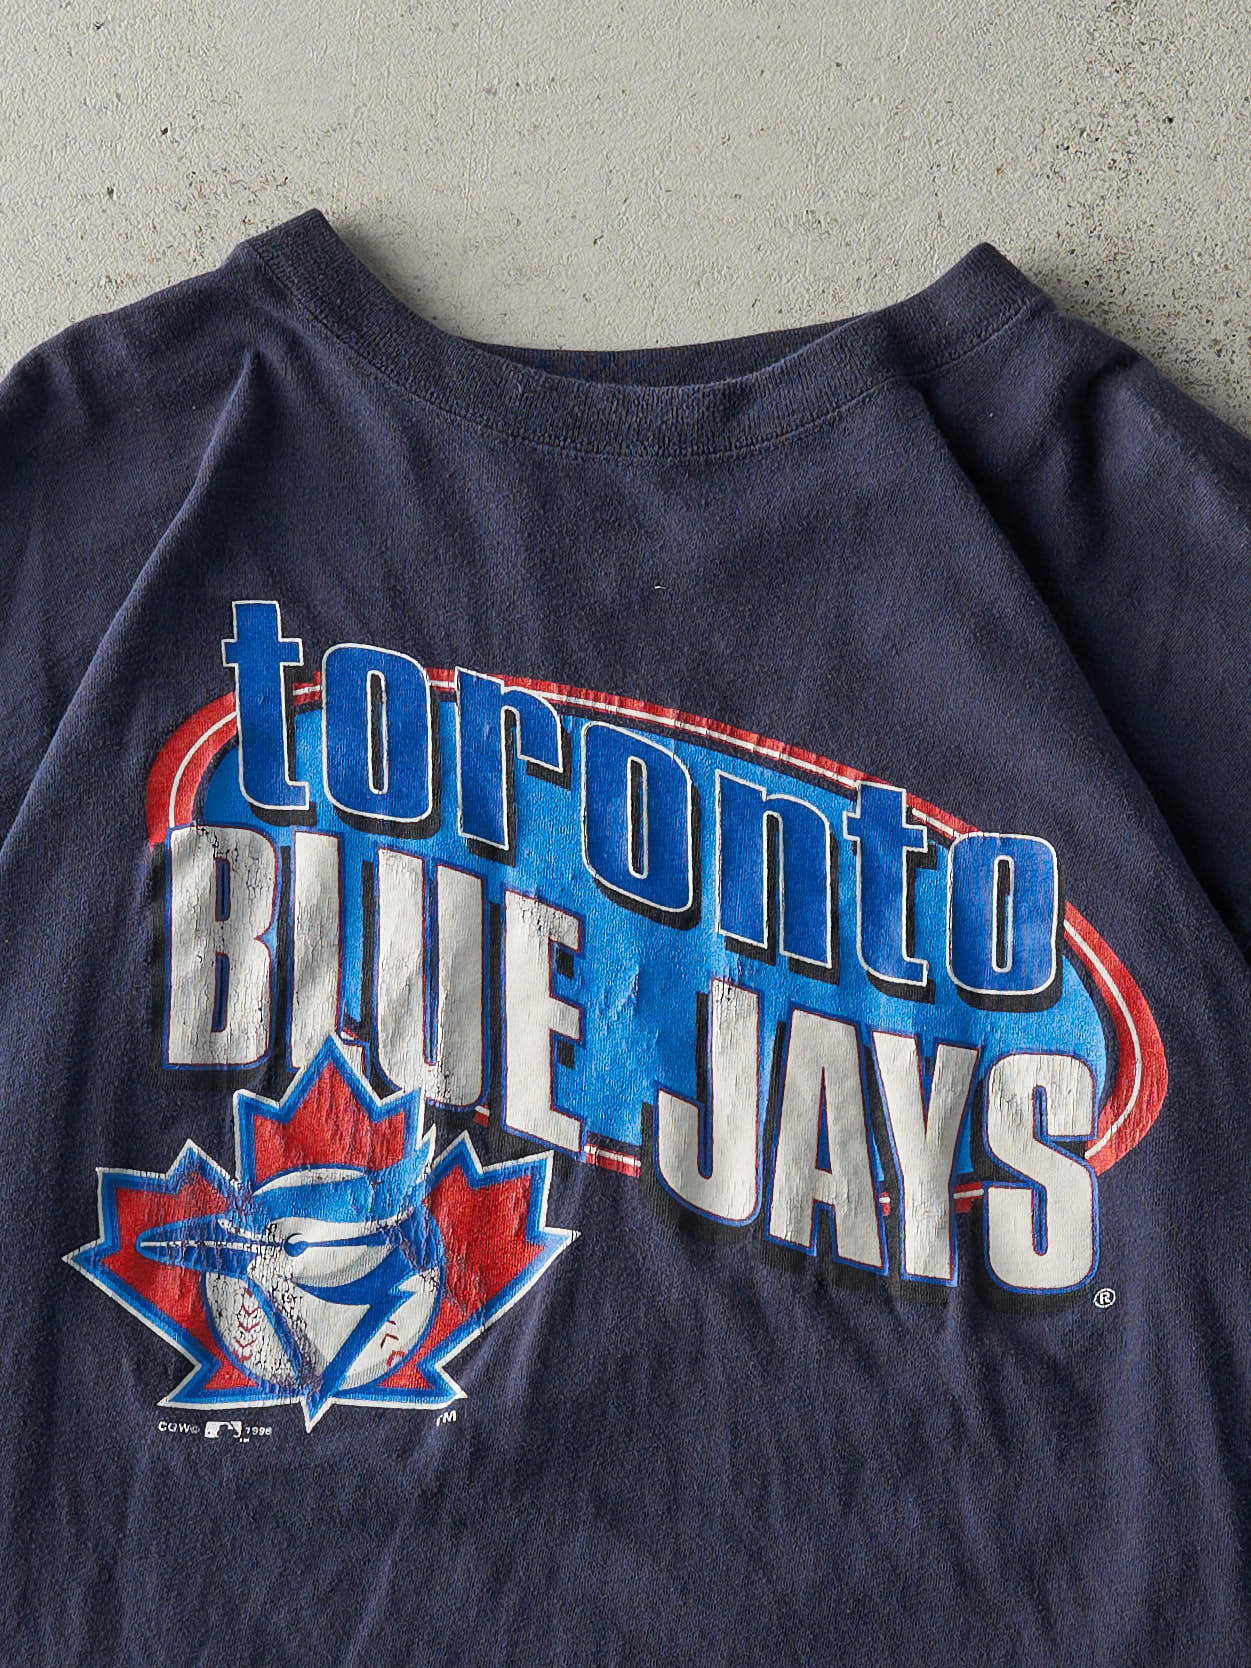 Vintage 96' Navy Blue Toronto Blue Jays Tee (M)